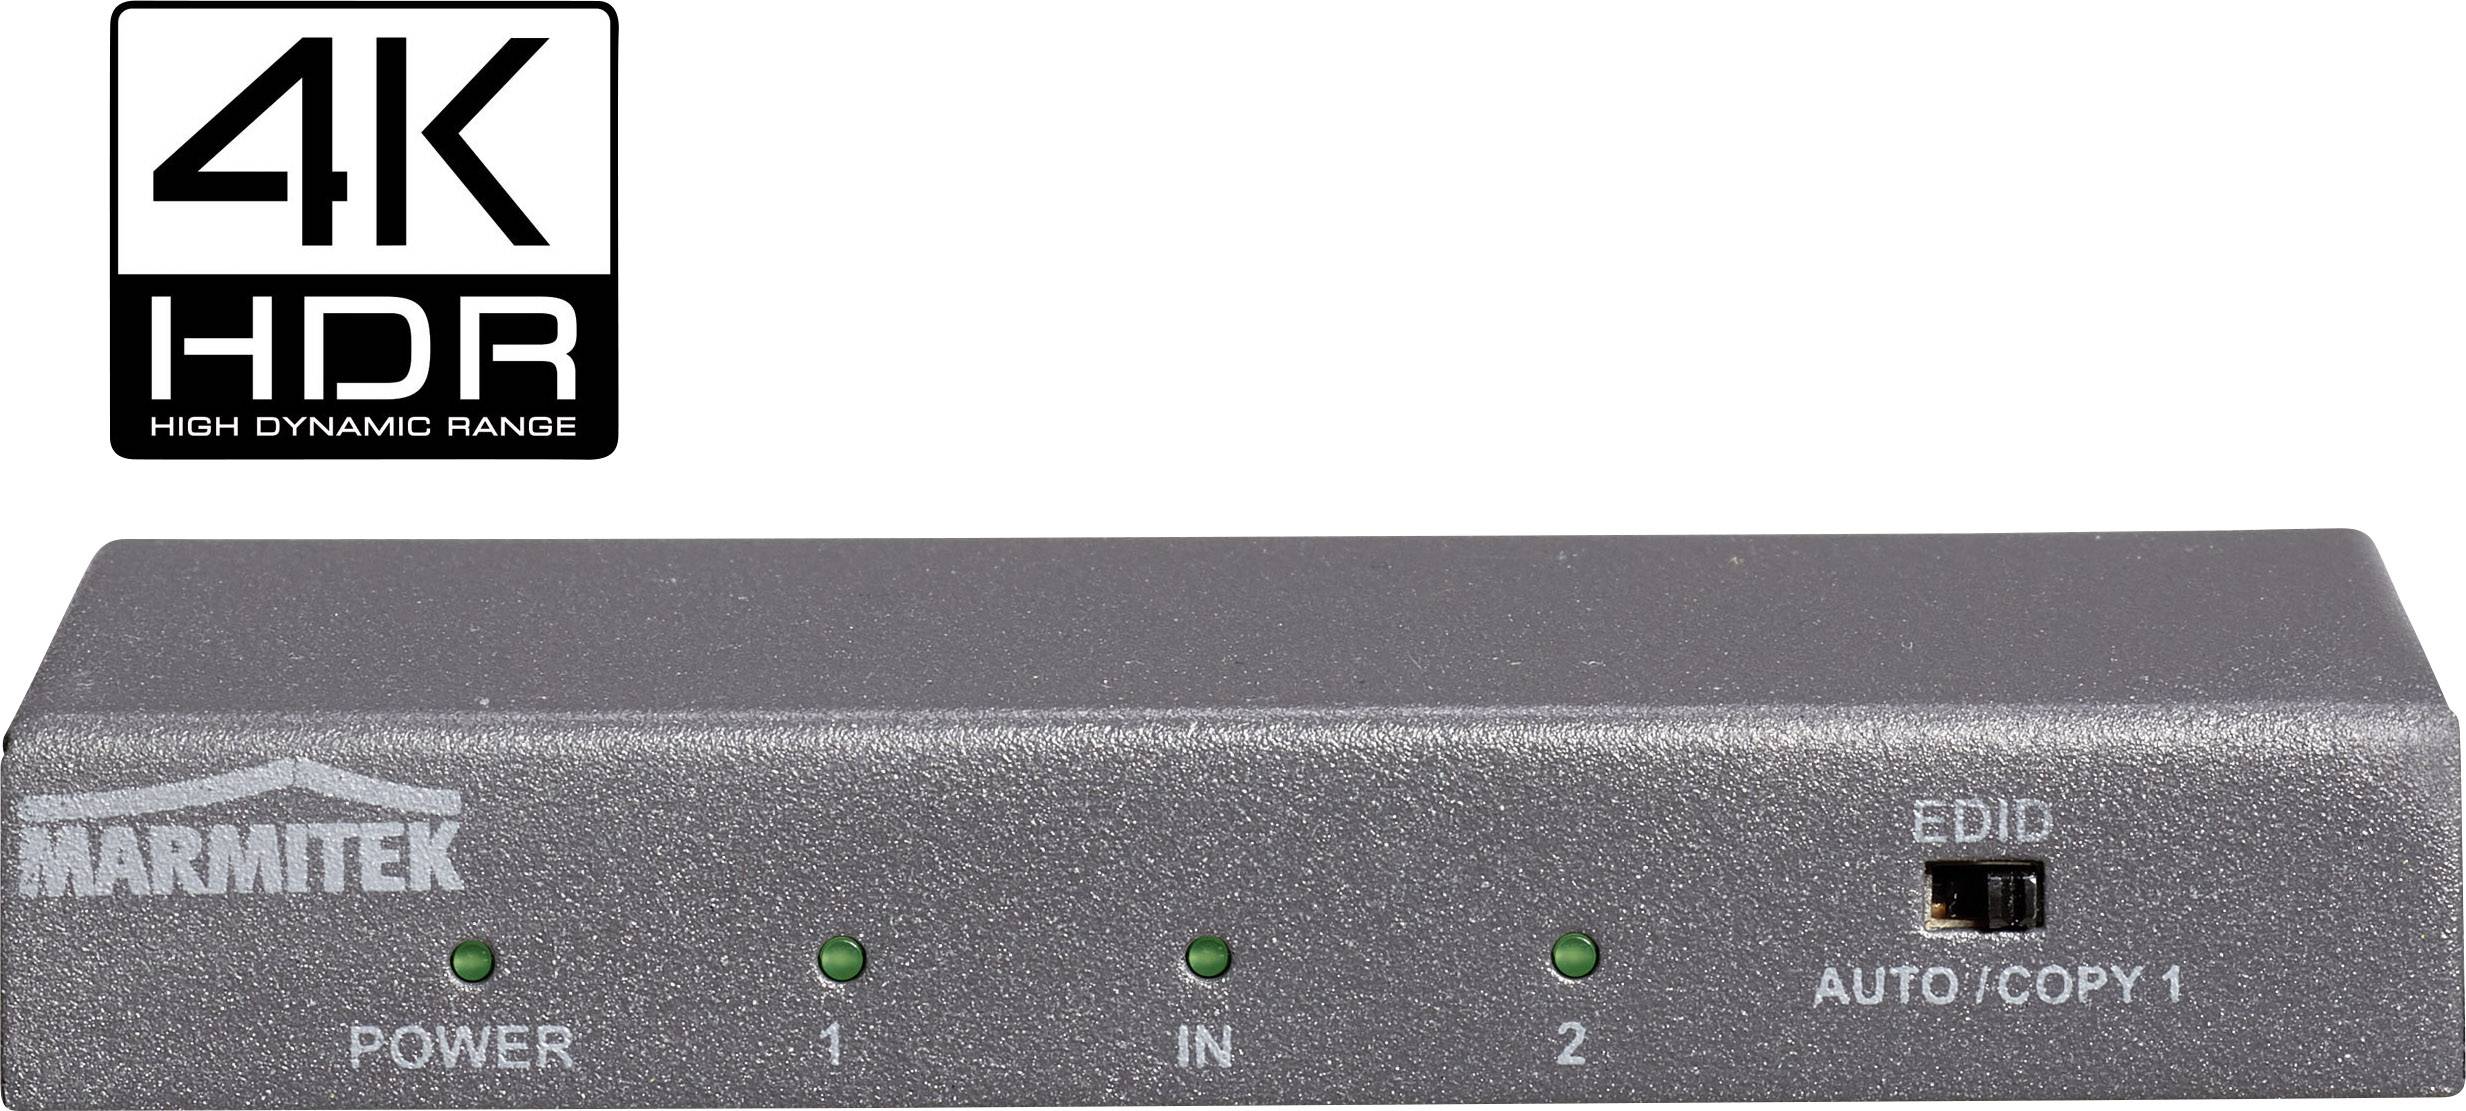 MARMITEK Split 612 UHD 2.0 2 Port HDMI-Splitter 3D-Wiedergabe möglich, Metallgehäuse